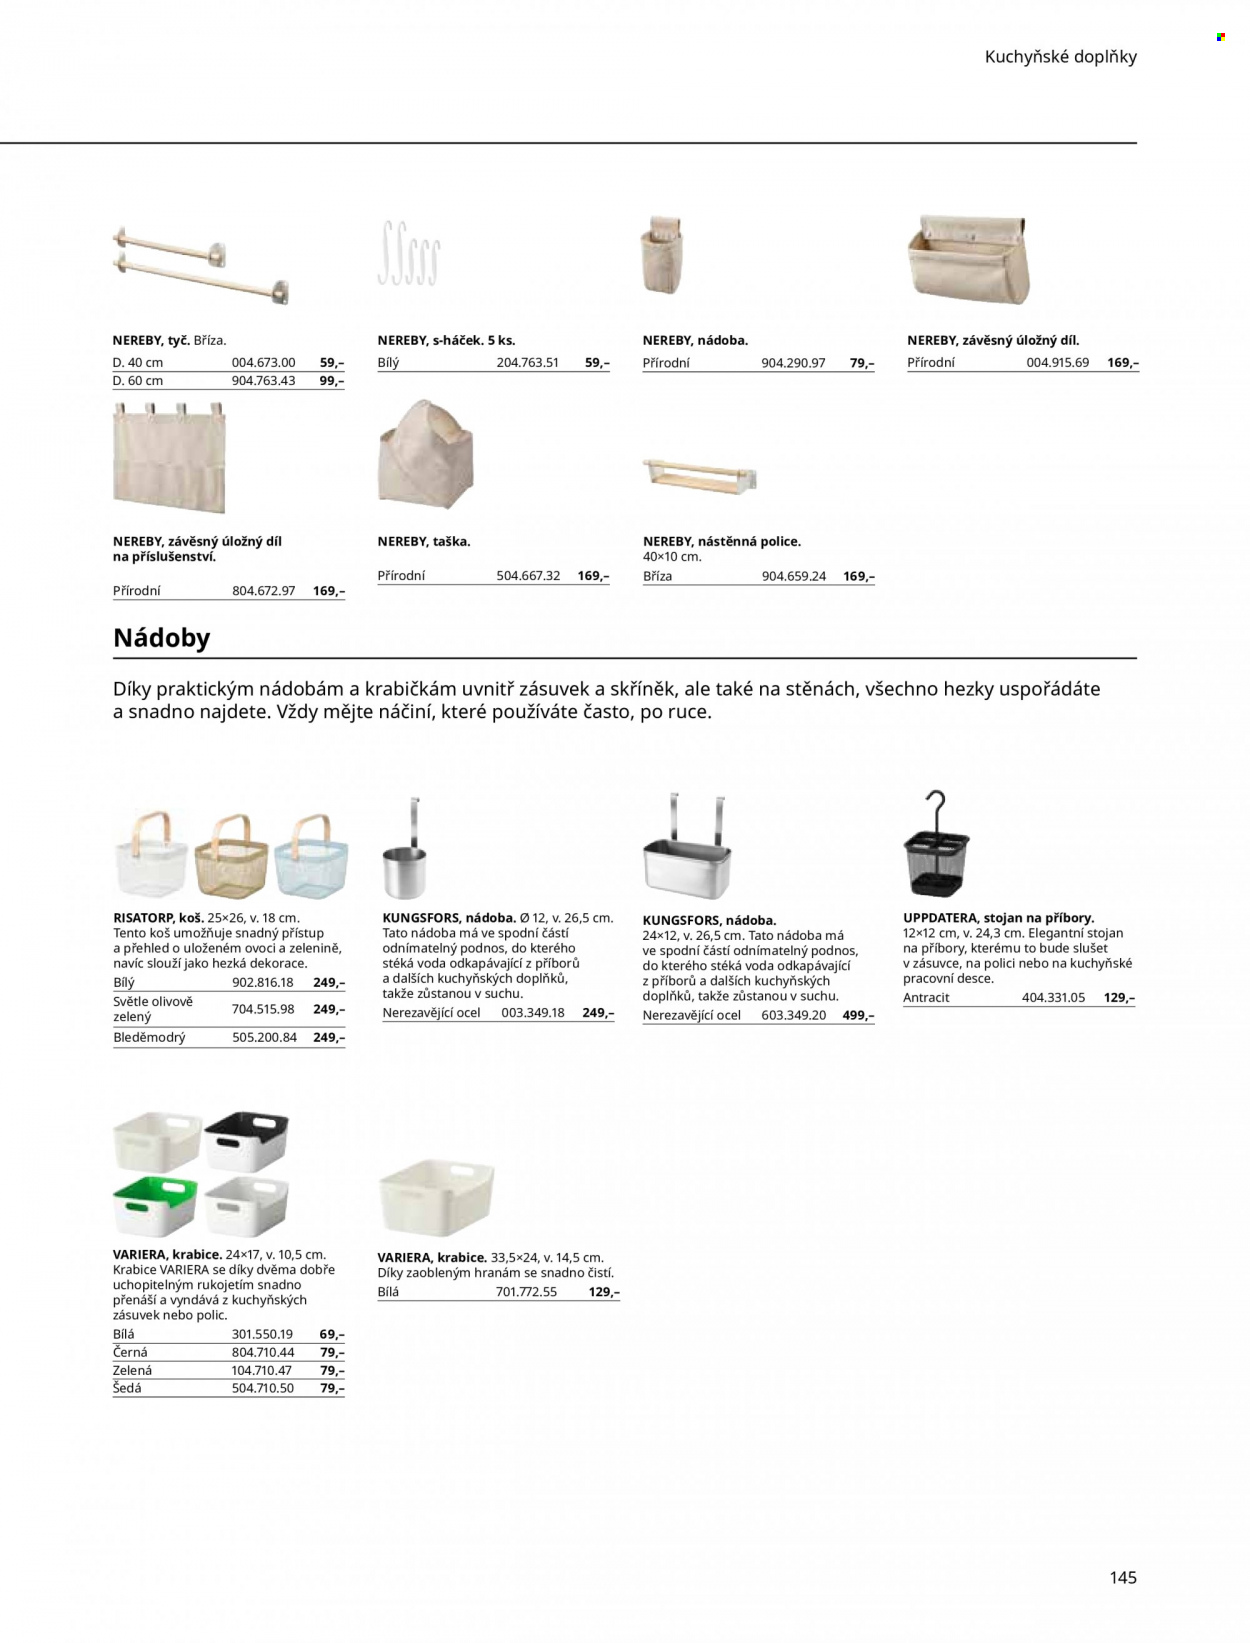 thumbnail - Leták IKEA - Produkty v akci - podnos, kuchyňské doplňky, stojan na příbory, koš, police, úložný box, nástěnná police, dekorace, háček, taška. Strana 145.